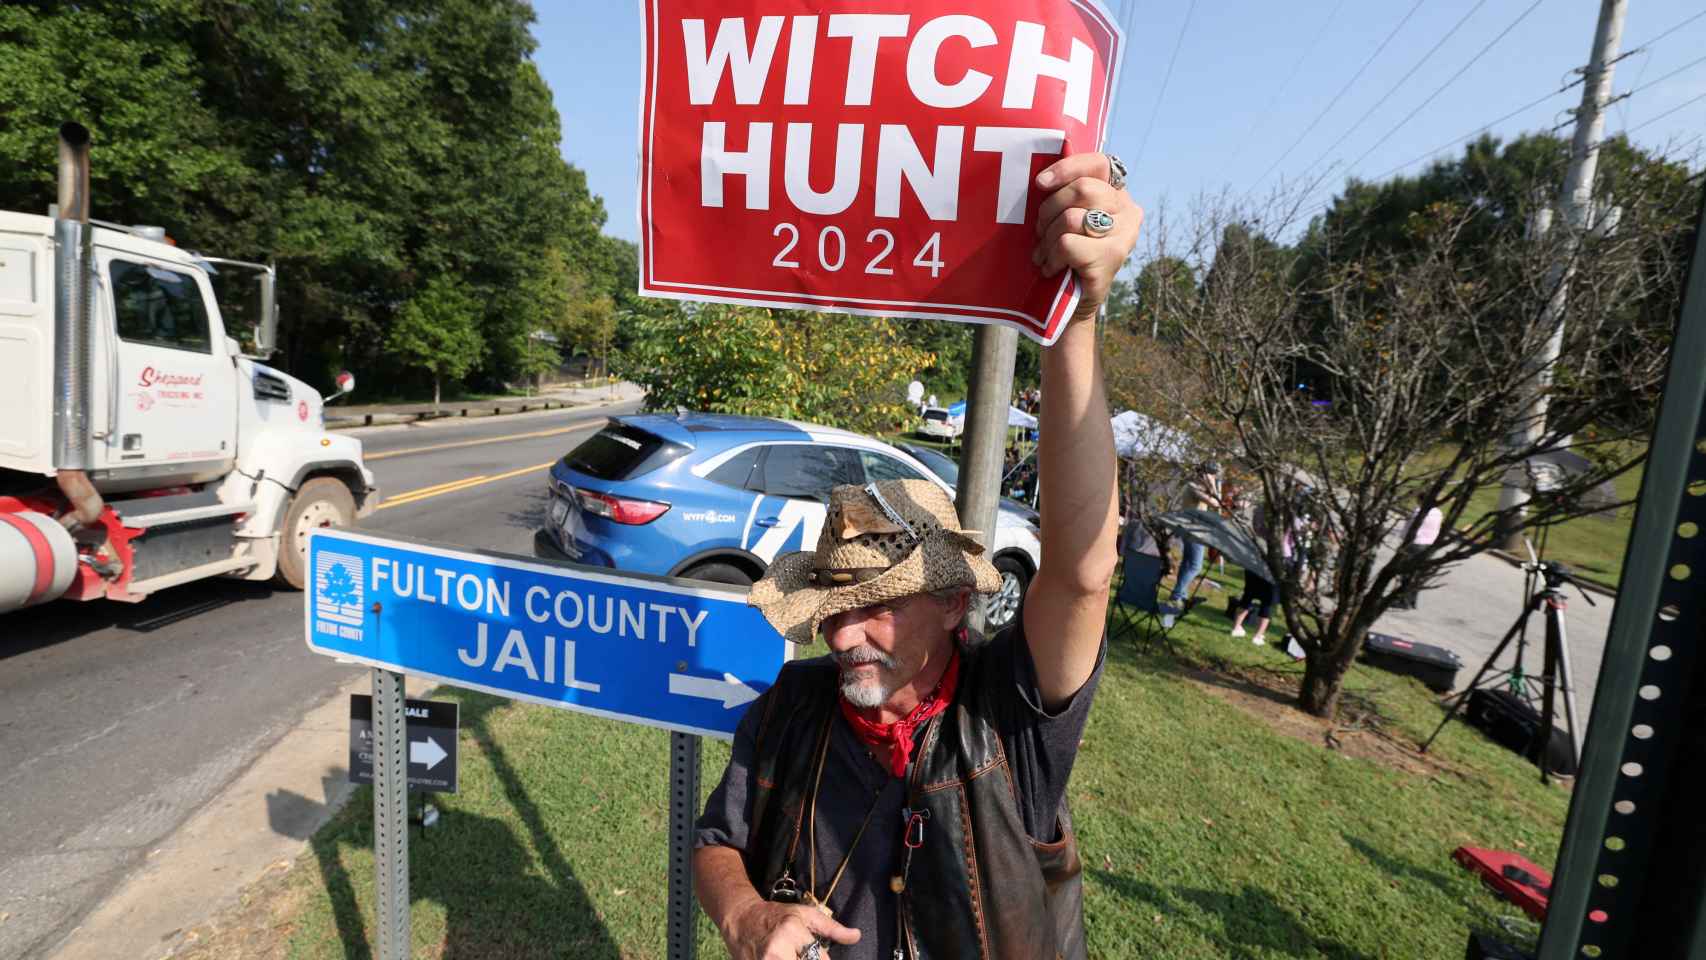 Un hombre apoya a Trump con un cartel criticando la caza de brujas